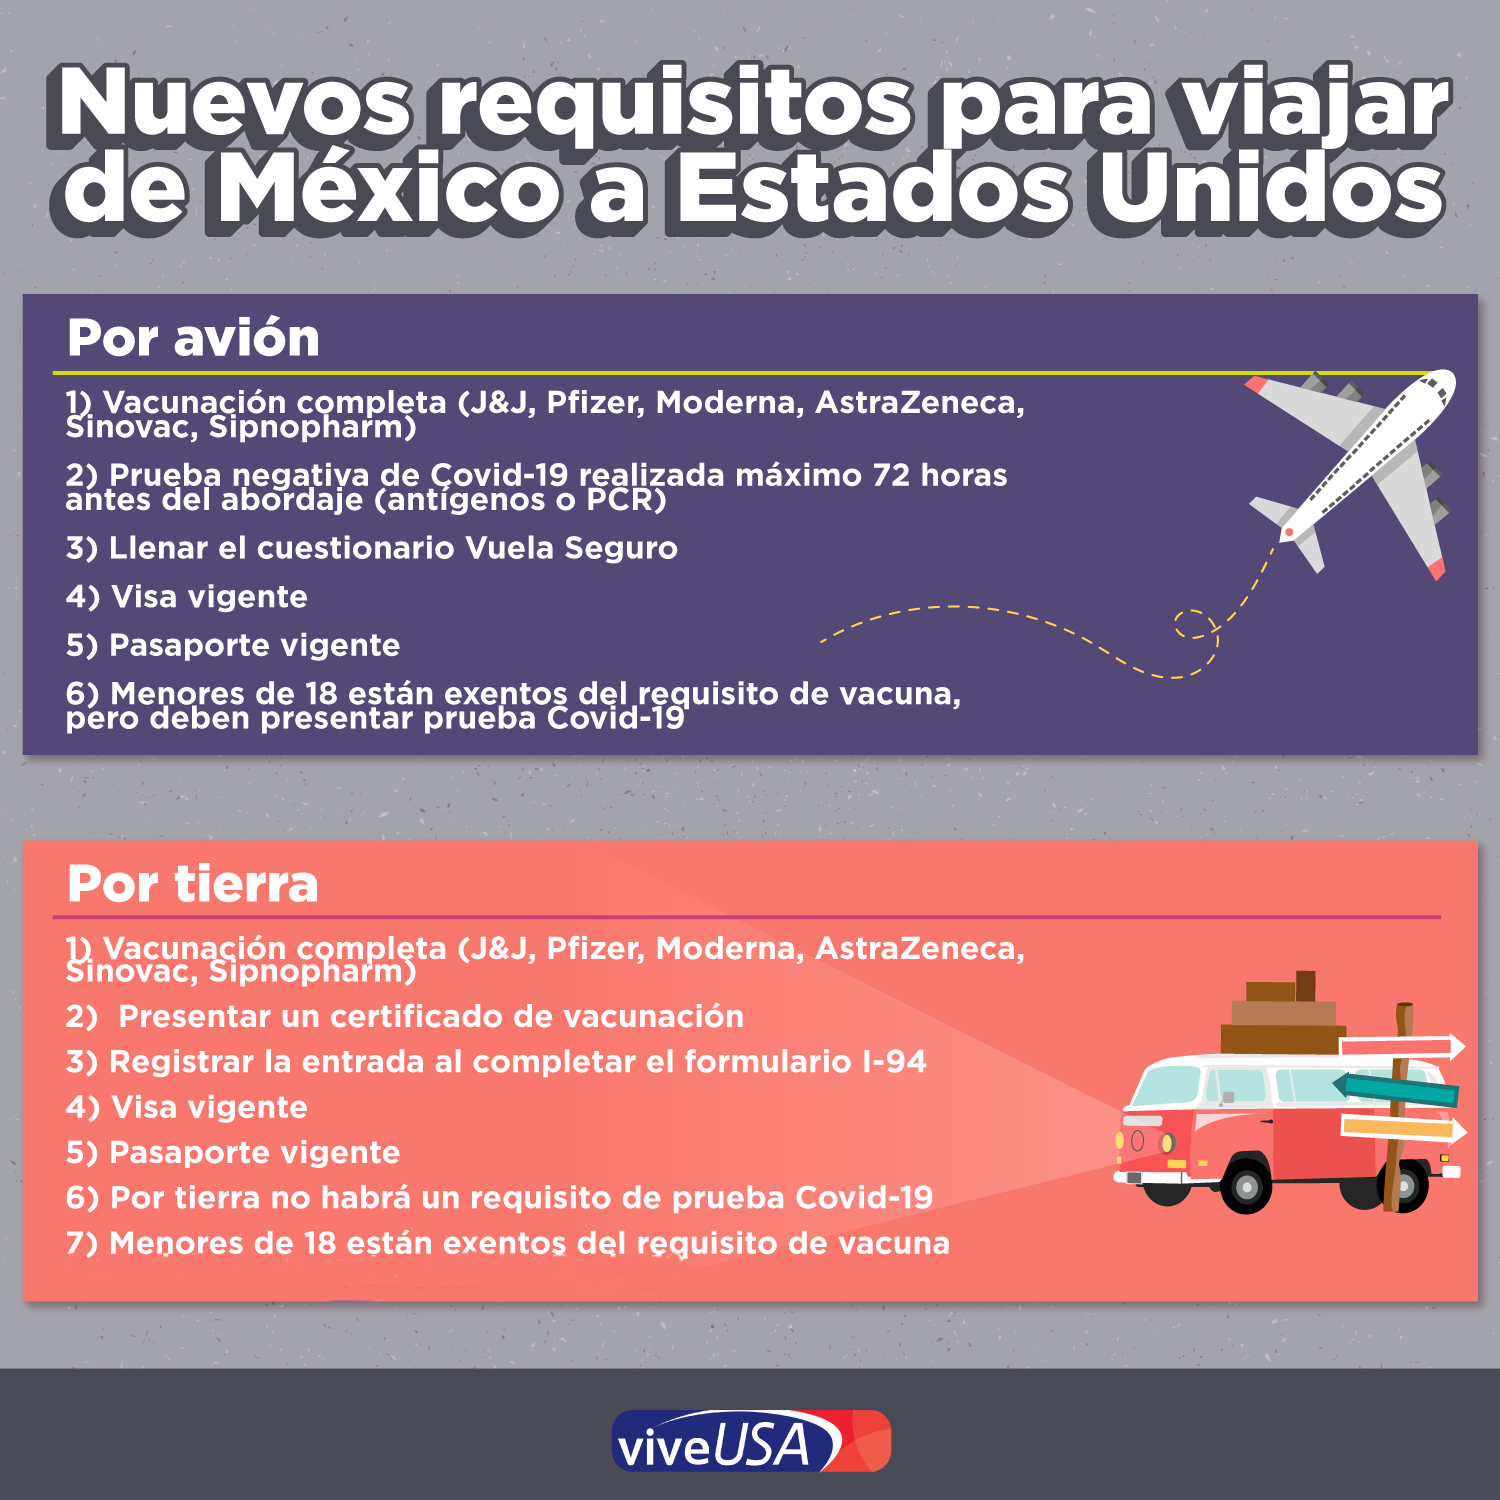 Novia Excelente Olla de crack Vive USA on Twitter: "A partir del 8 de noviembre, los mexicanos deben  cumplir con nuevos requisitos al entrar a Estados Unidos por avión o  tierra. Más: https://t.co/yxm6UdhnUw https://t.co/8oQAypP08B" / Twitter